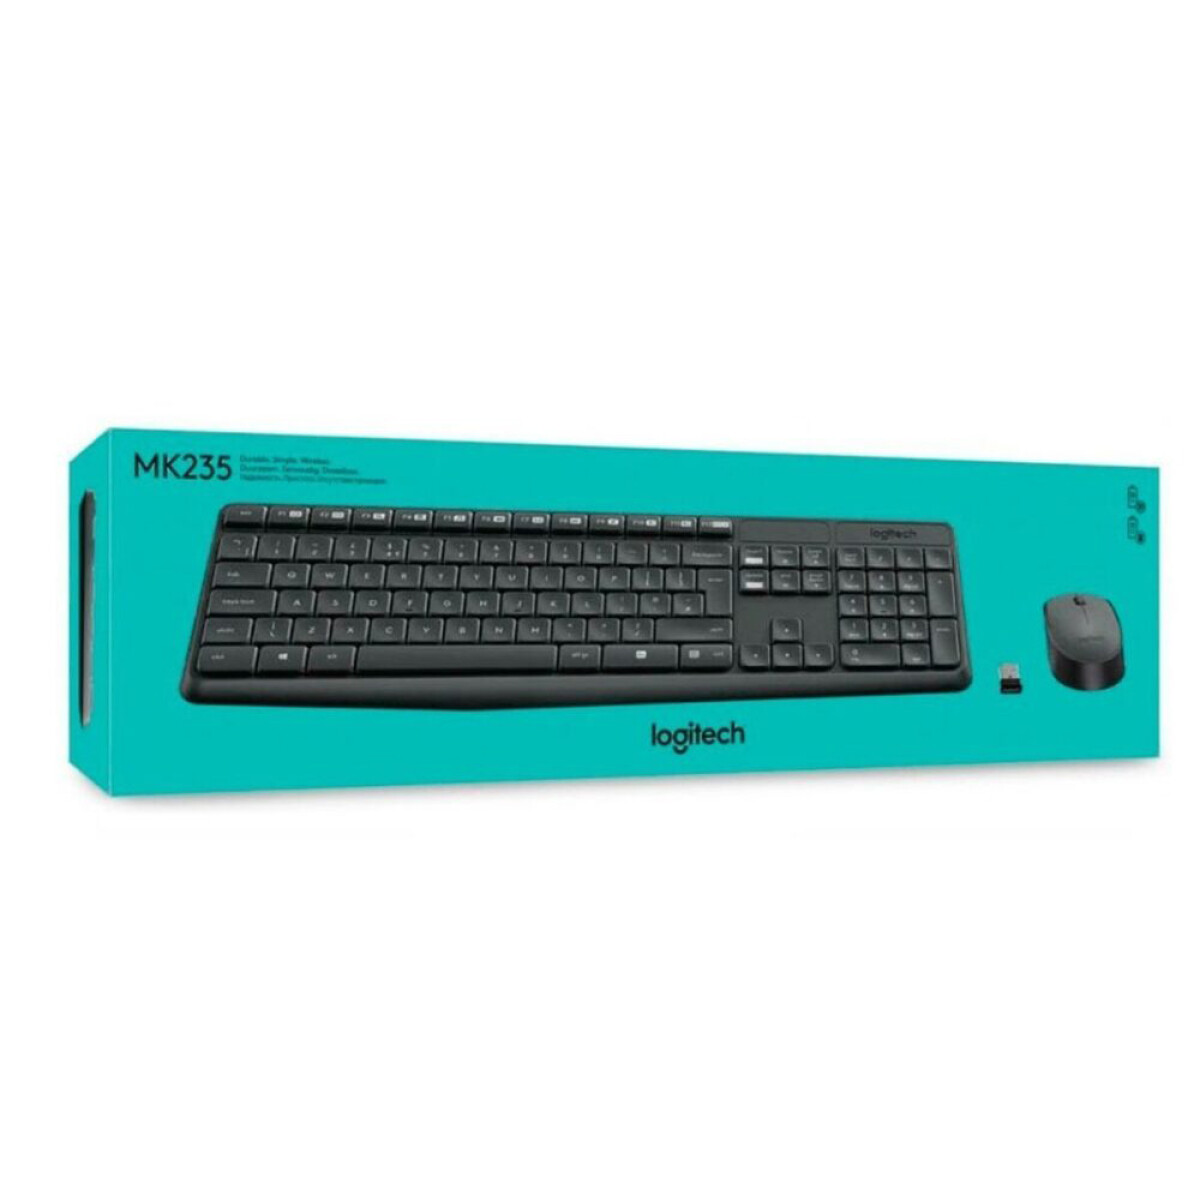 Keyboard + mouse logitech mk235 inalambrico - Negr0 